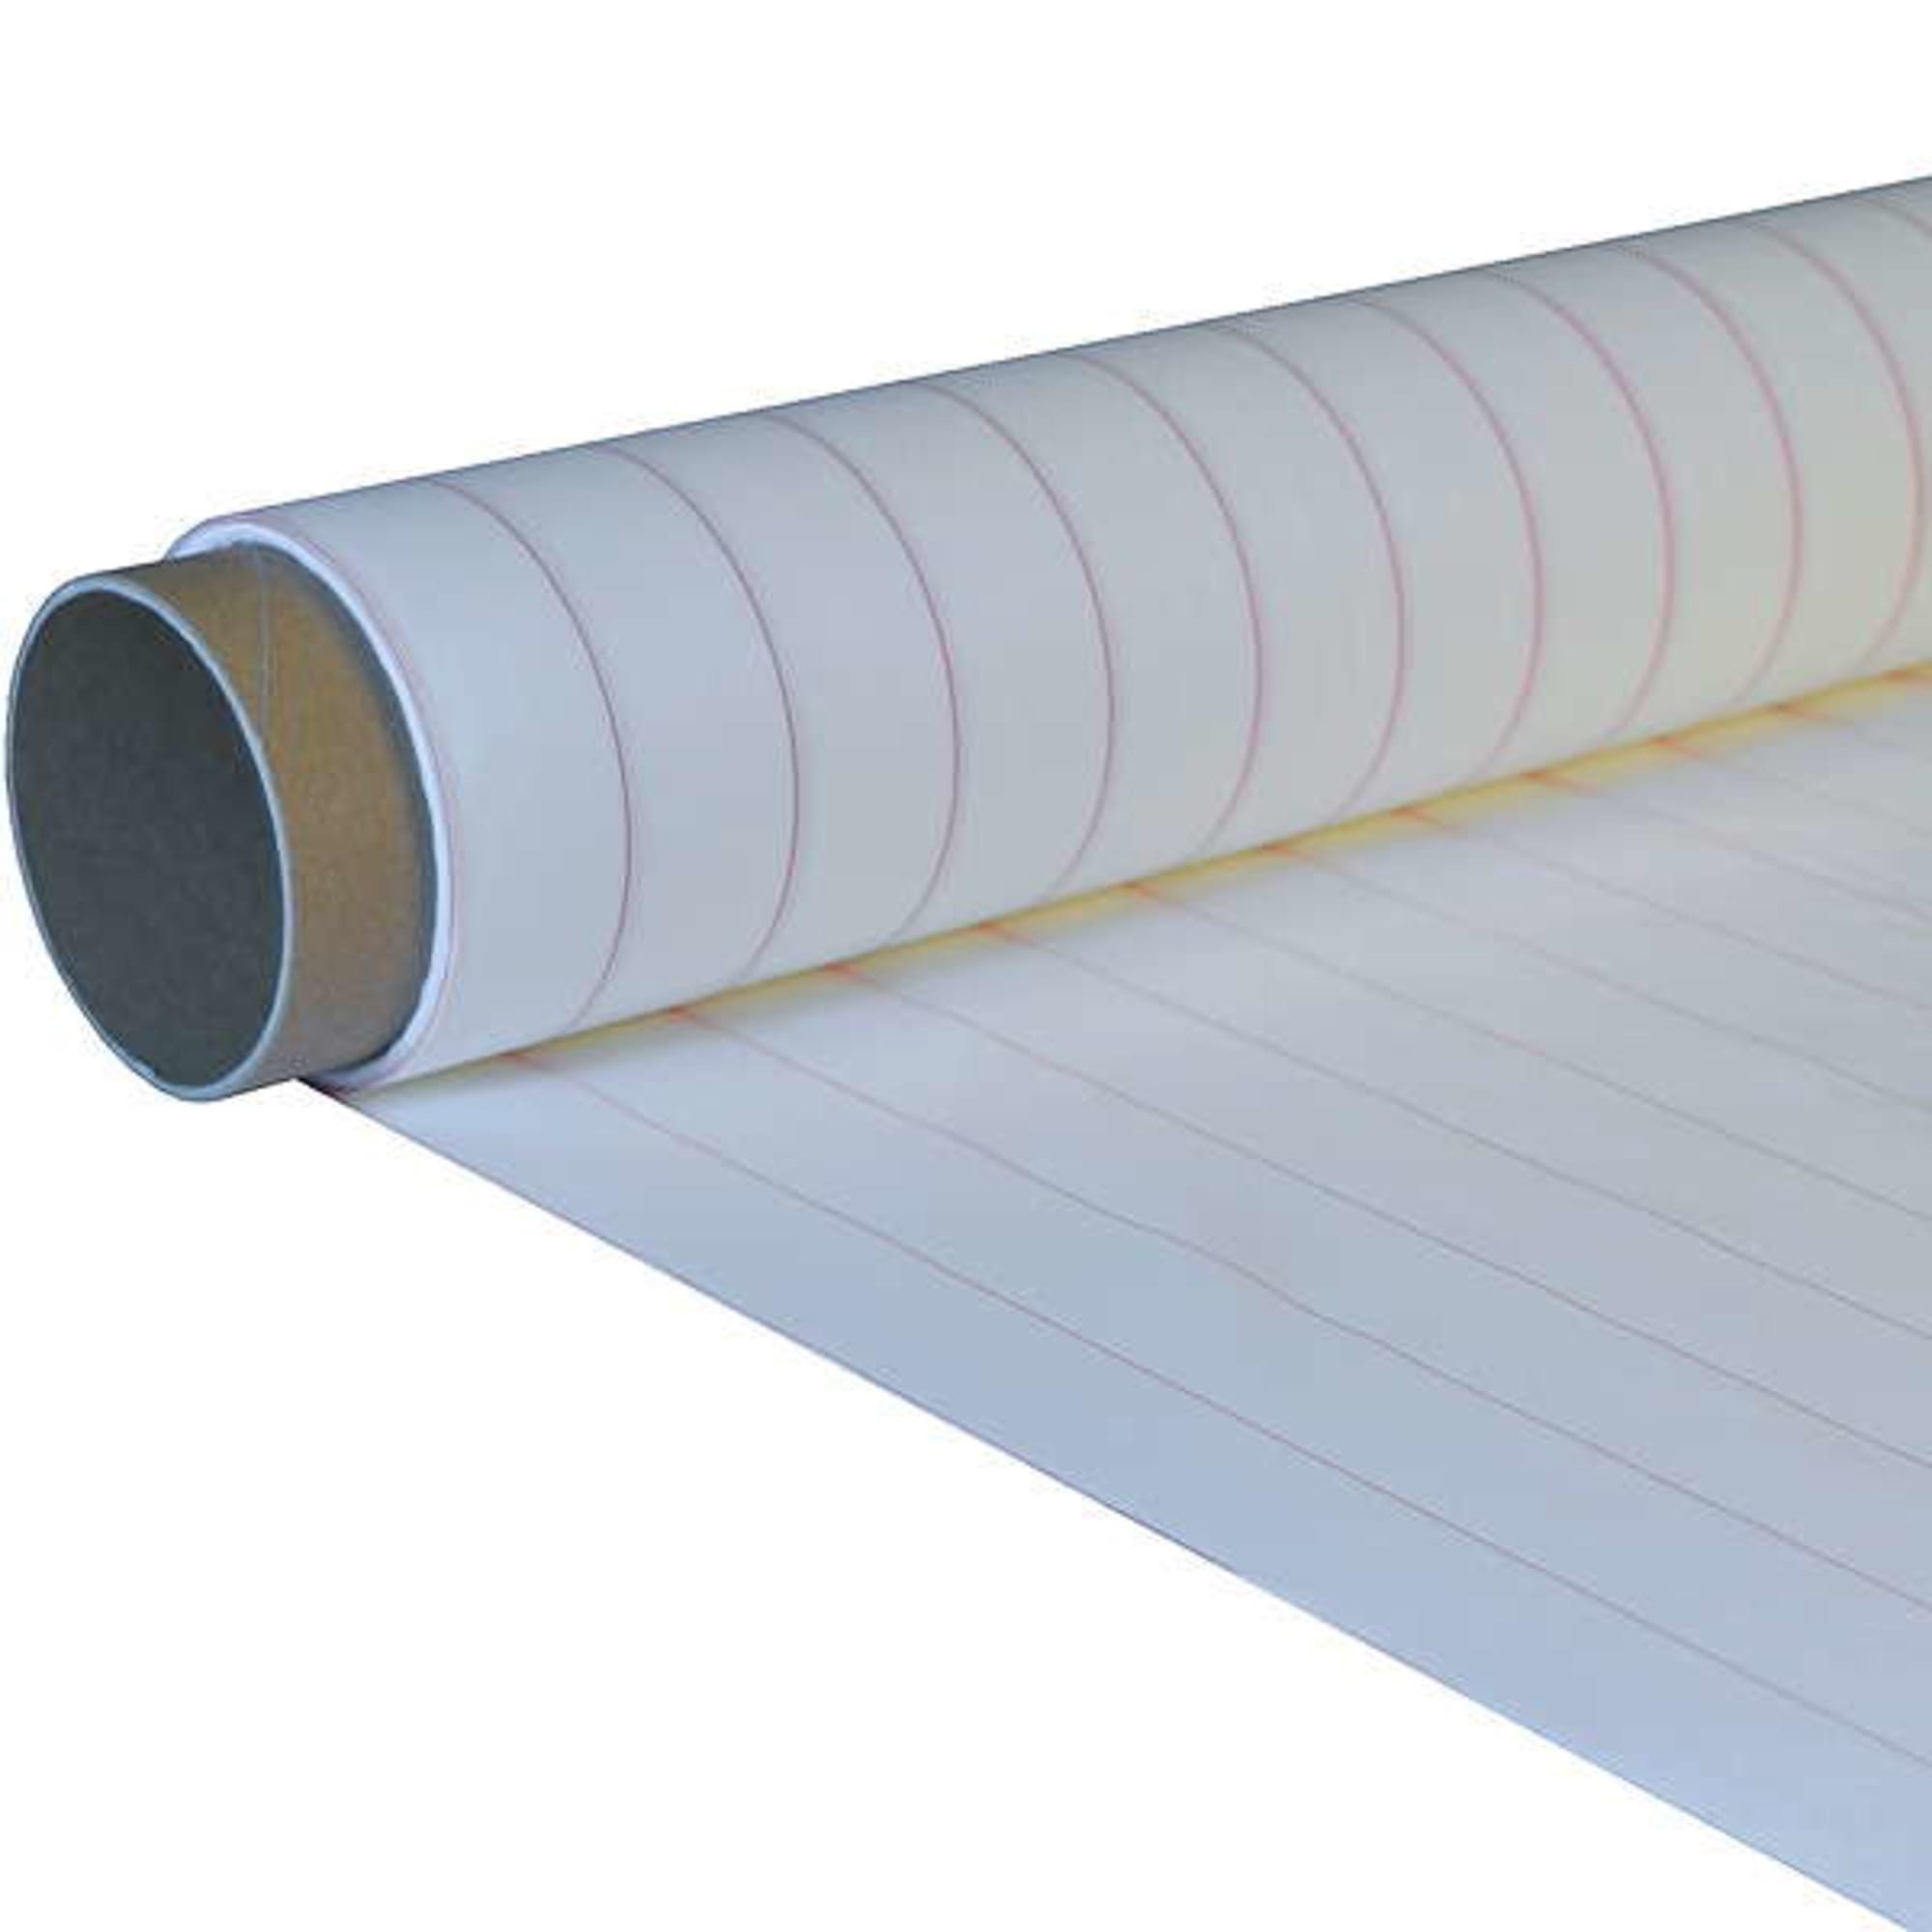 Peel ply 64 g/m² (plain weave) 150 cm , image 2